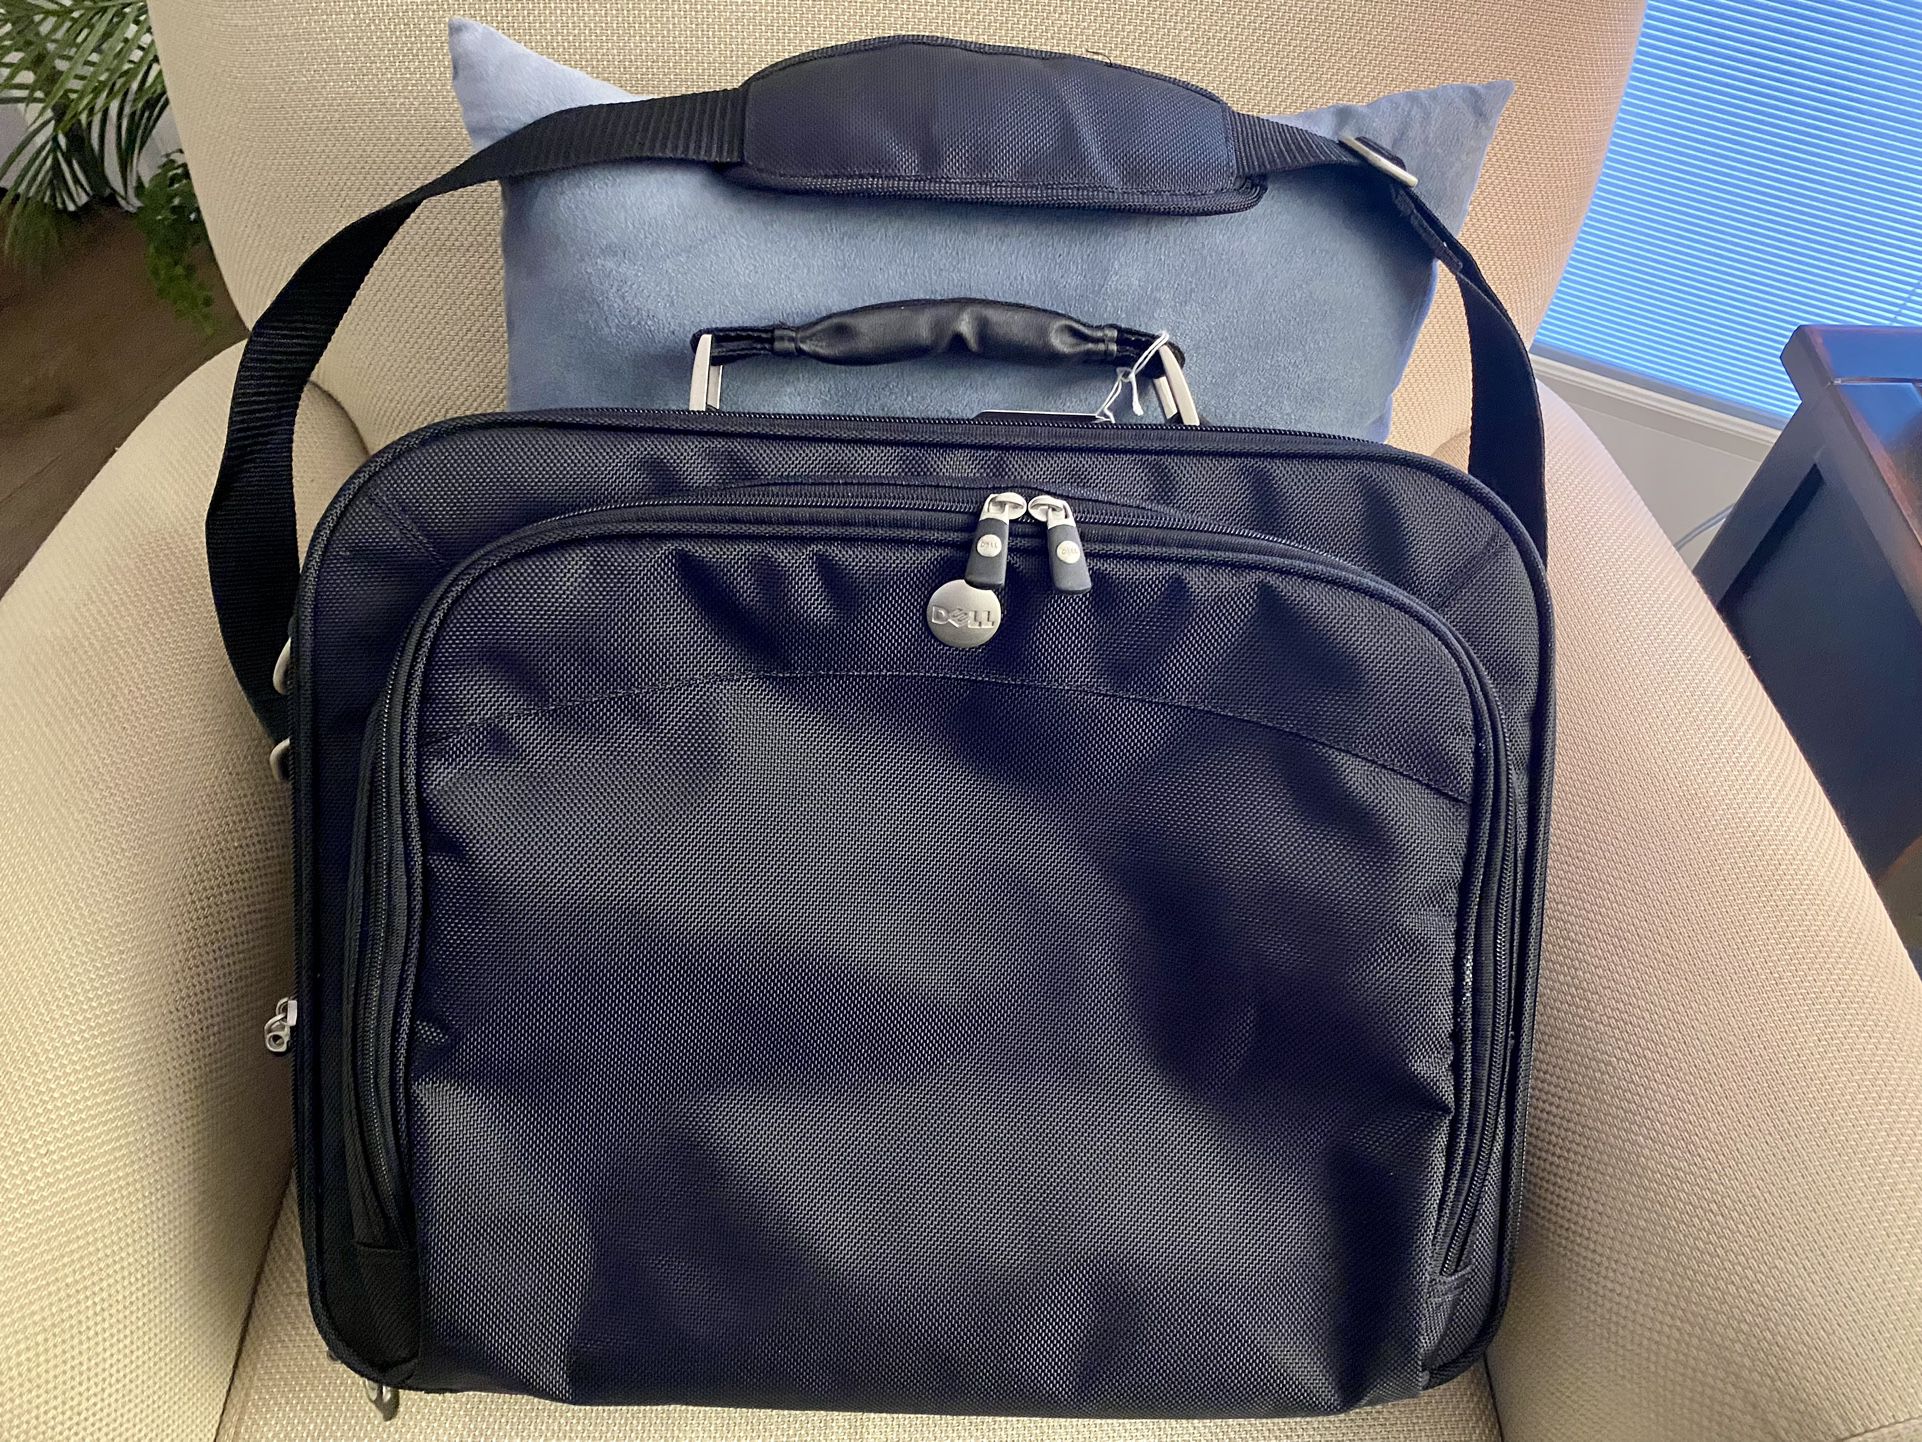 Dell Computer Bag